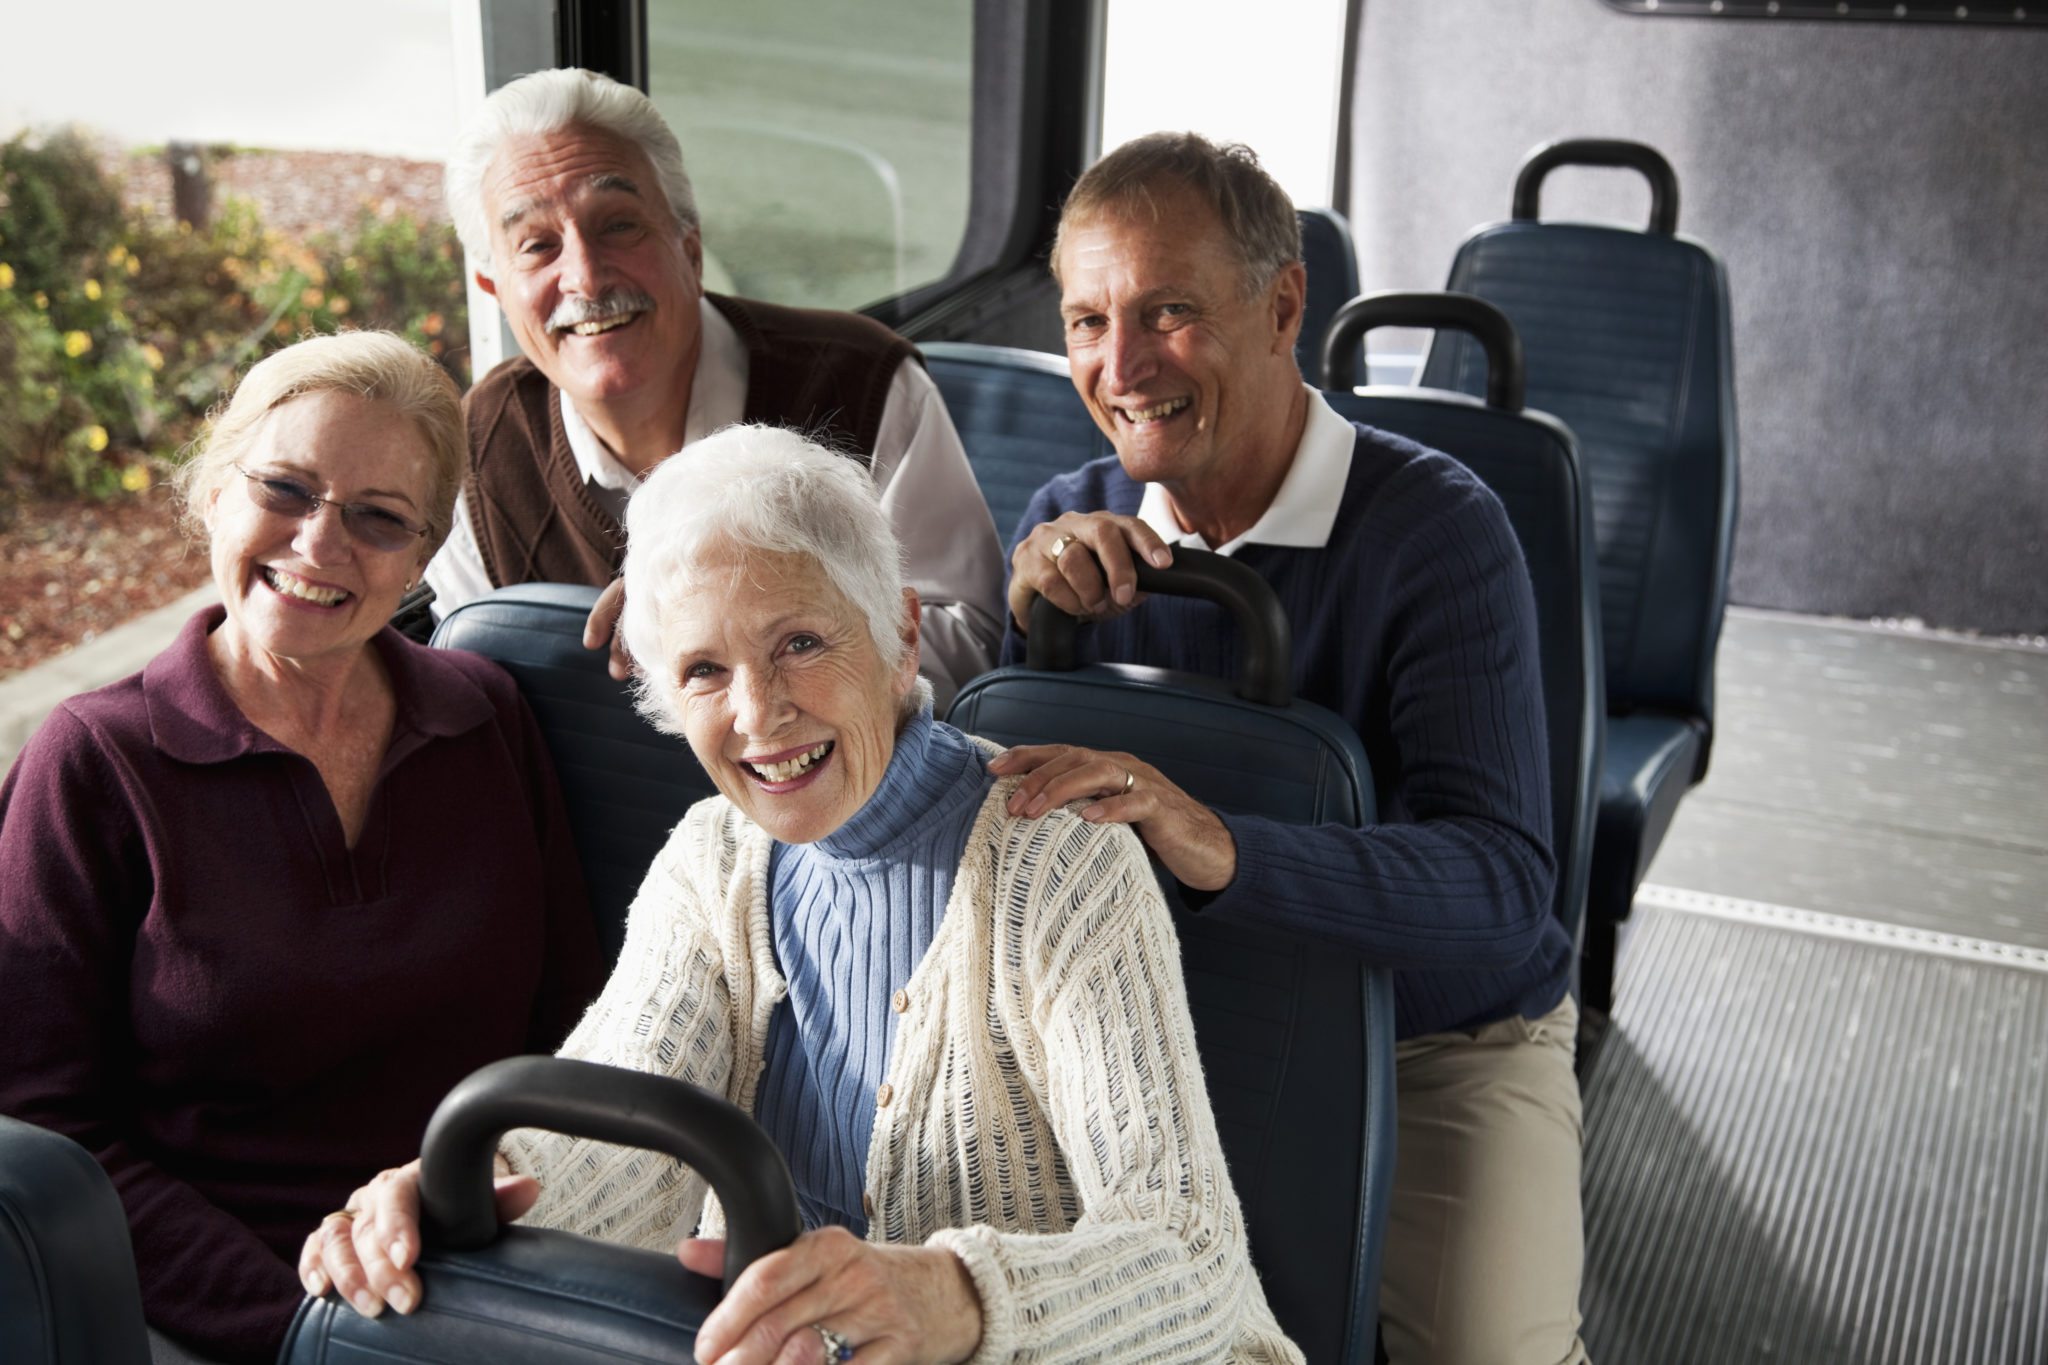 luxury bus travel near me for seniors